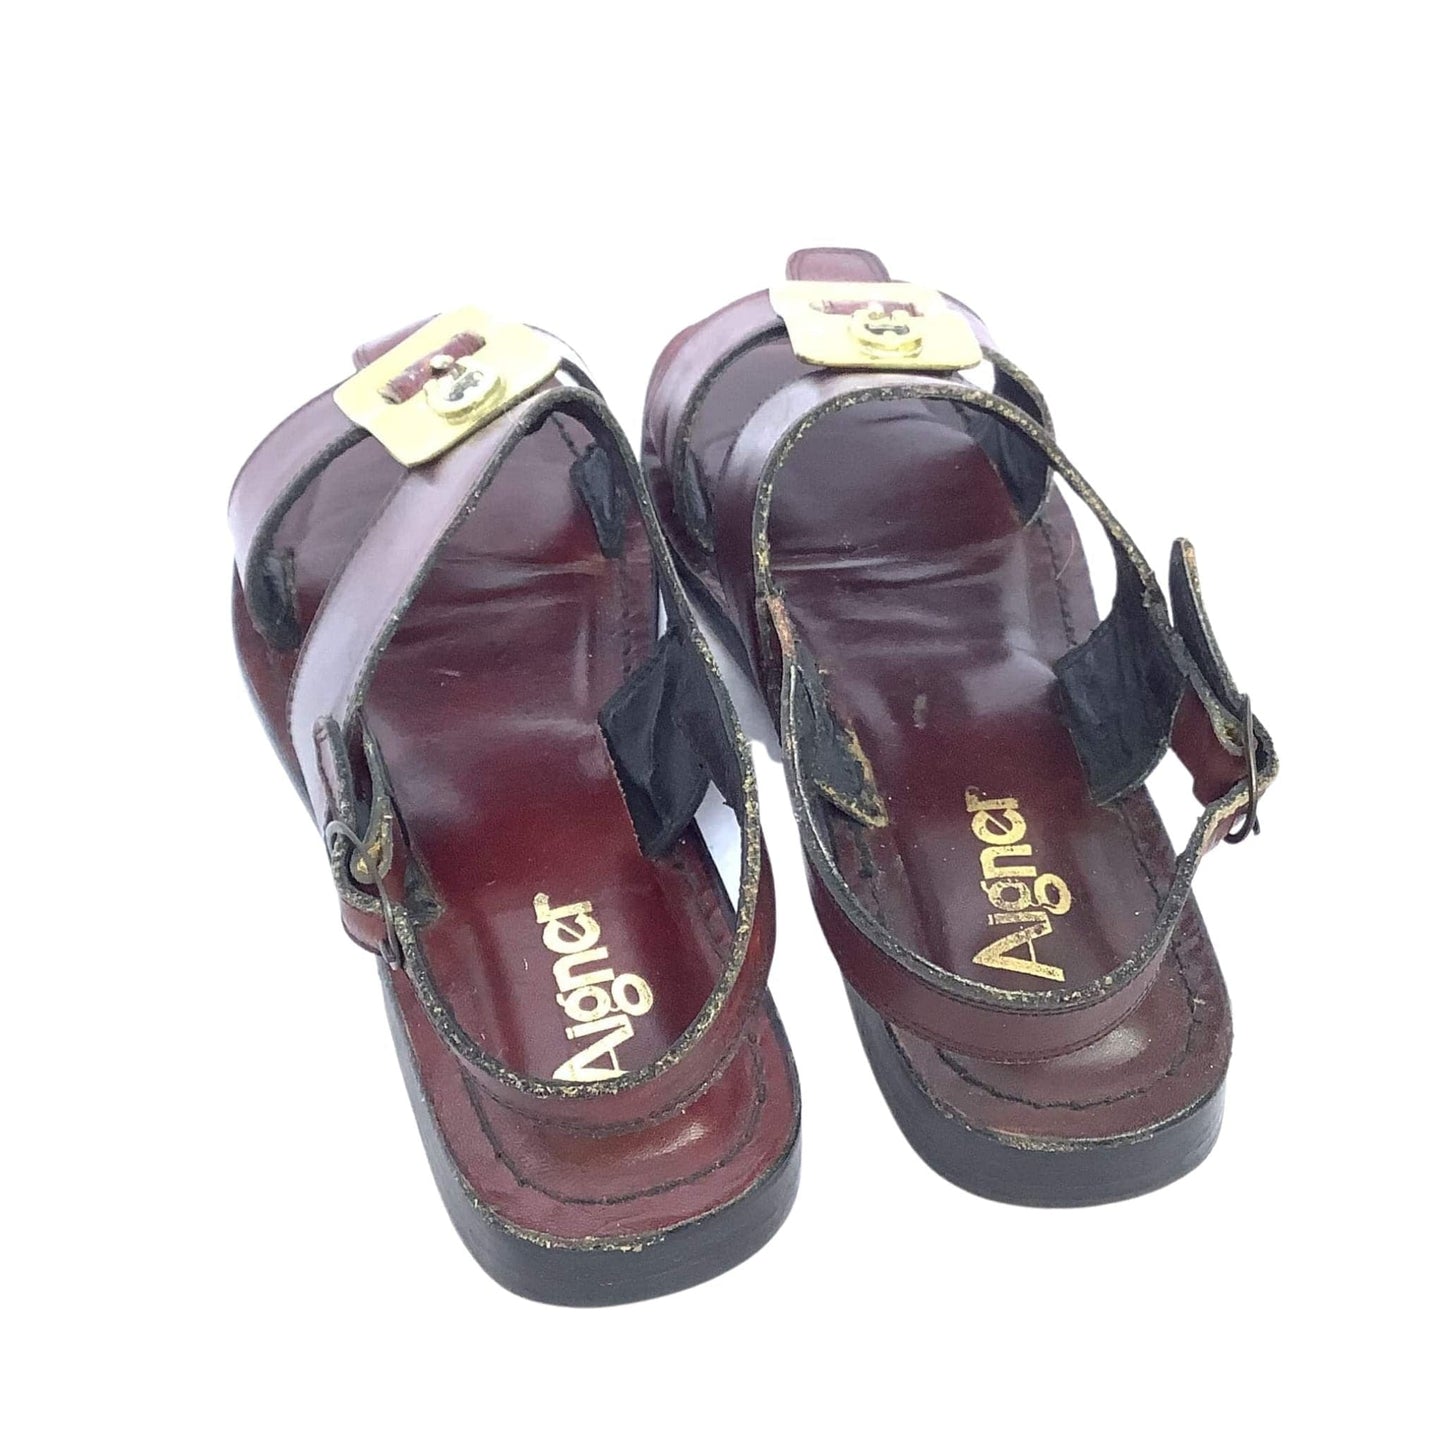 1980s Oxblood Flat Sandals 7 / Burgundy / Vintage 1980s